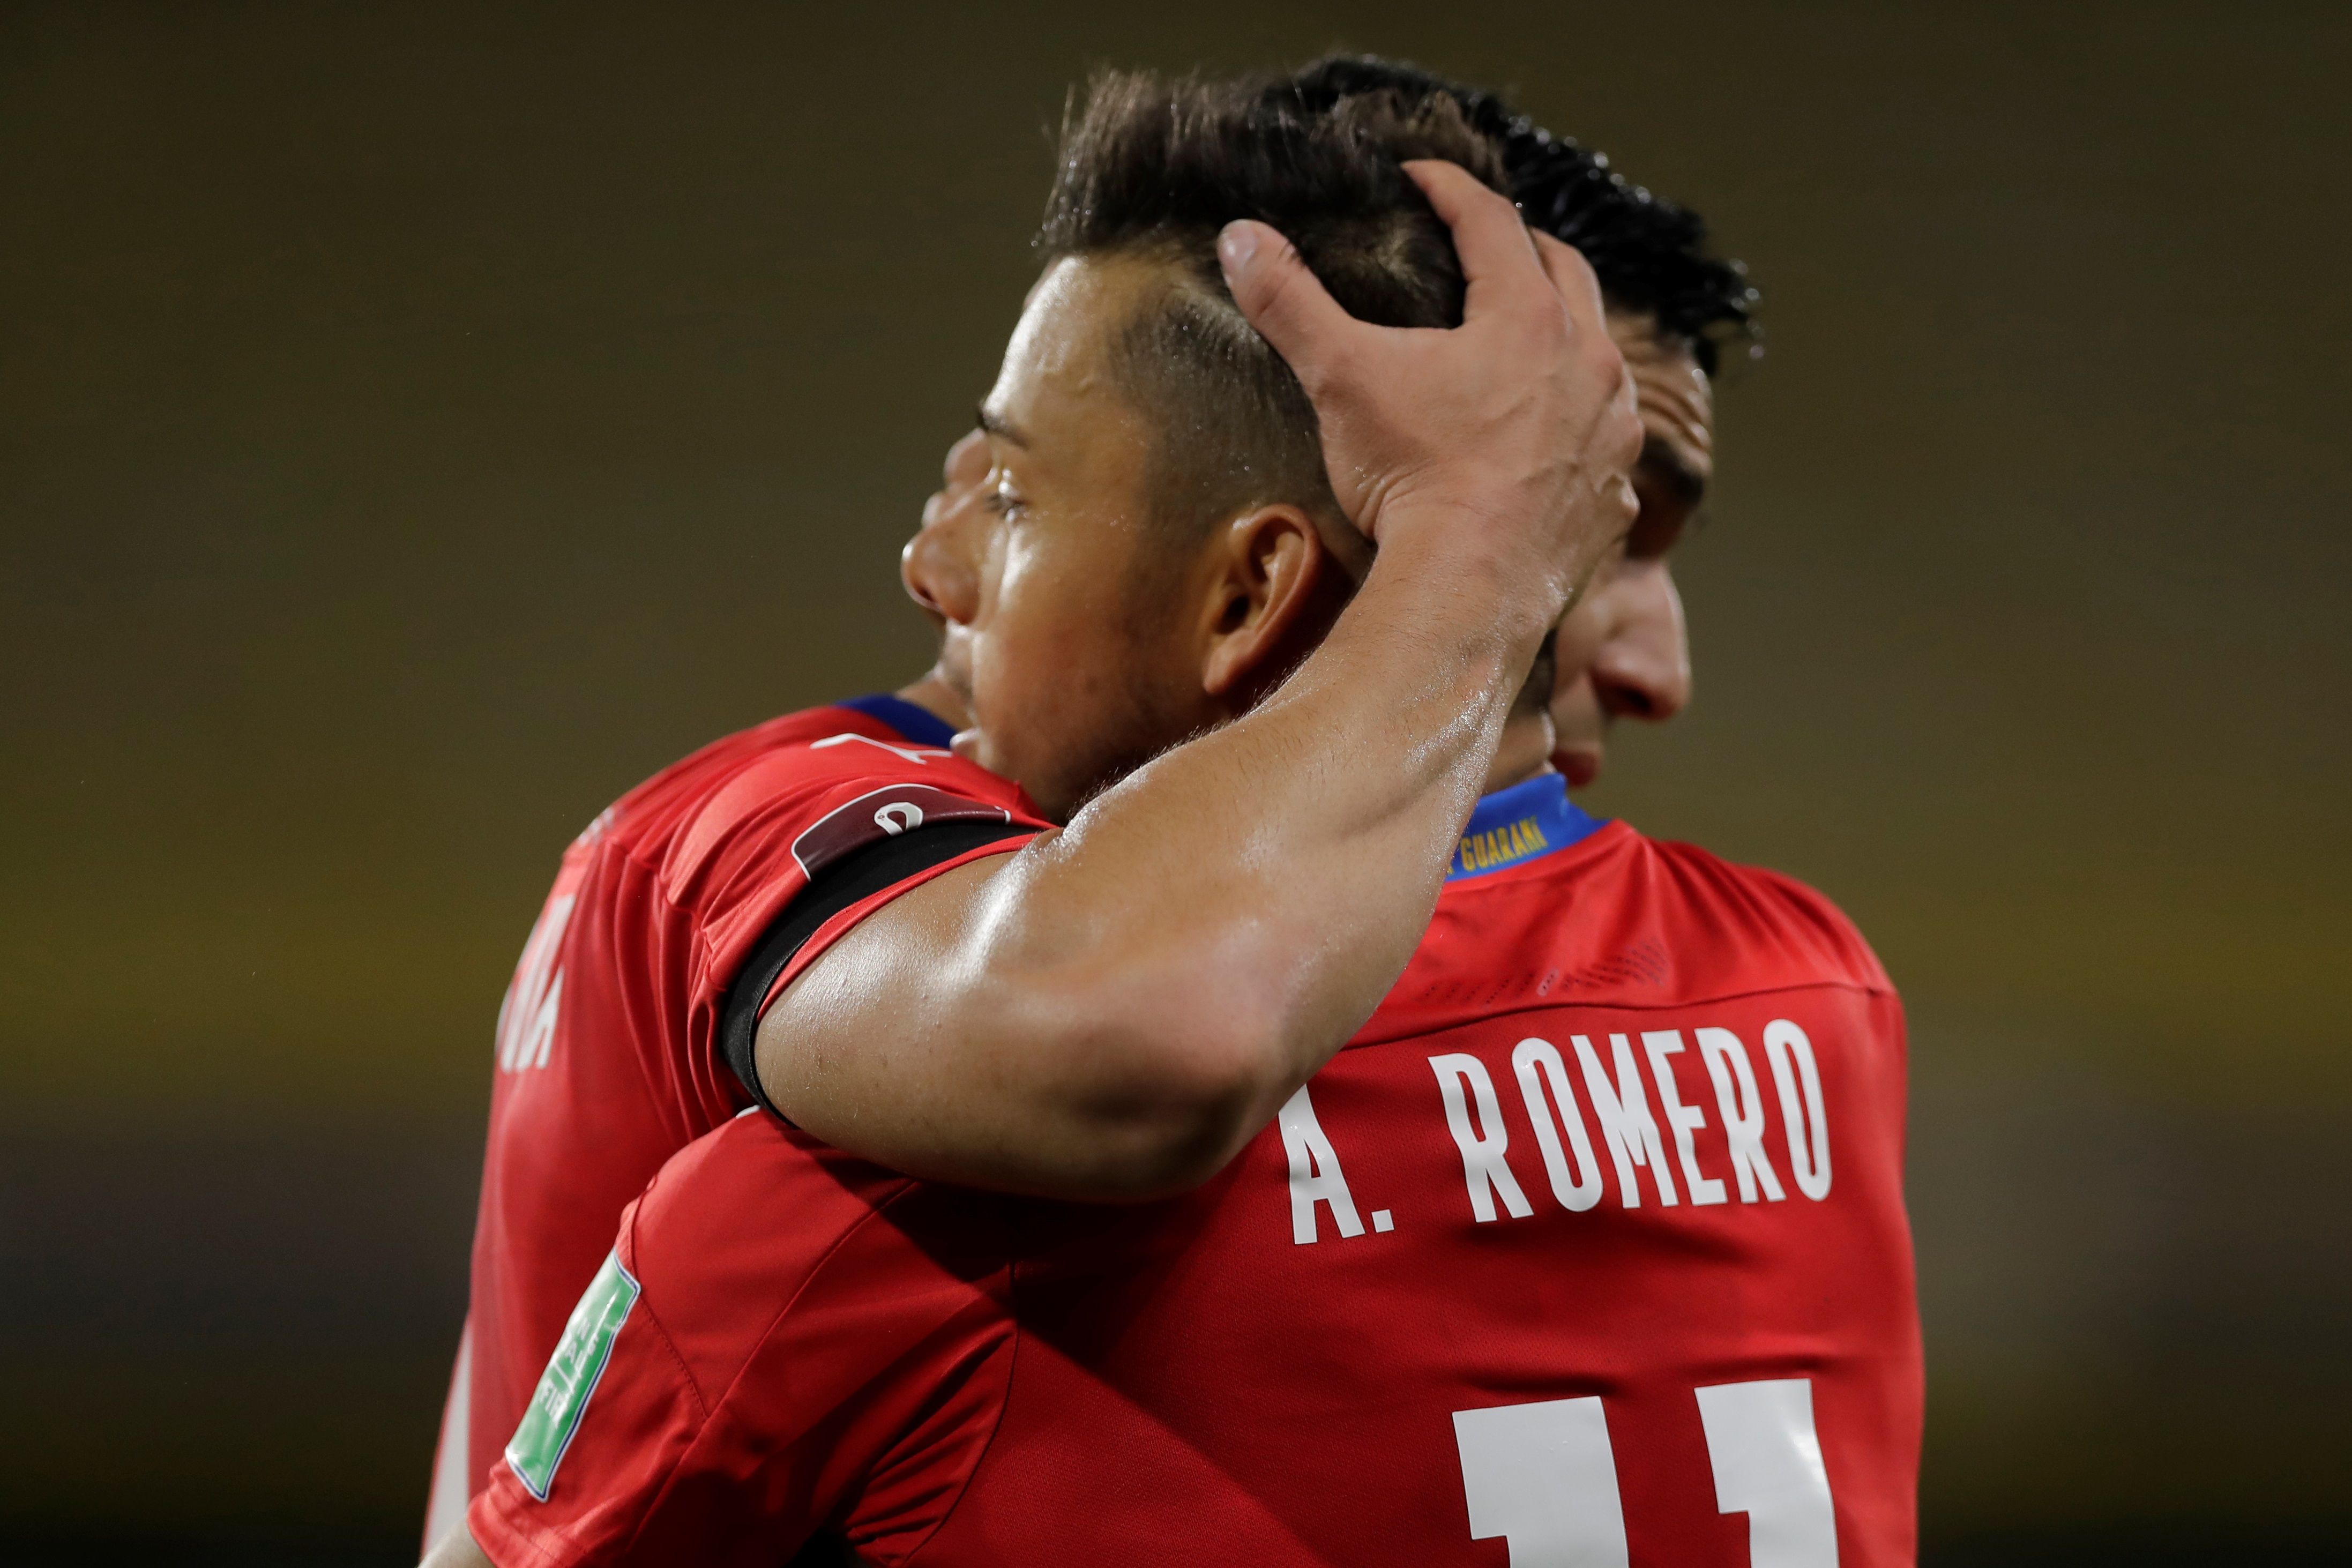 El jugador Ángel Romero de Paraguay celebra hoy con un compañero tras anotar contra Argentina. (Foto Prensa Libre: EFE)